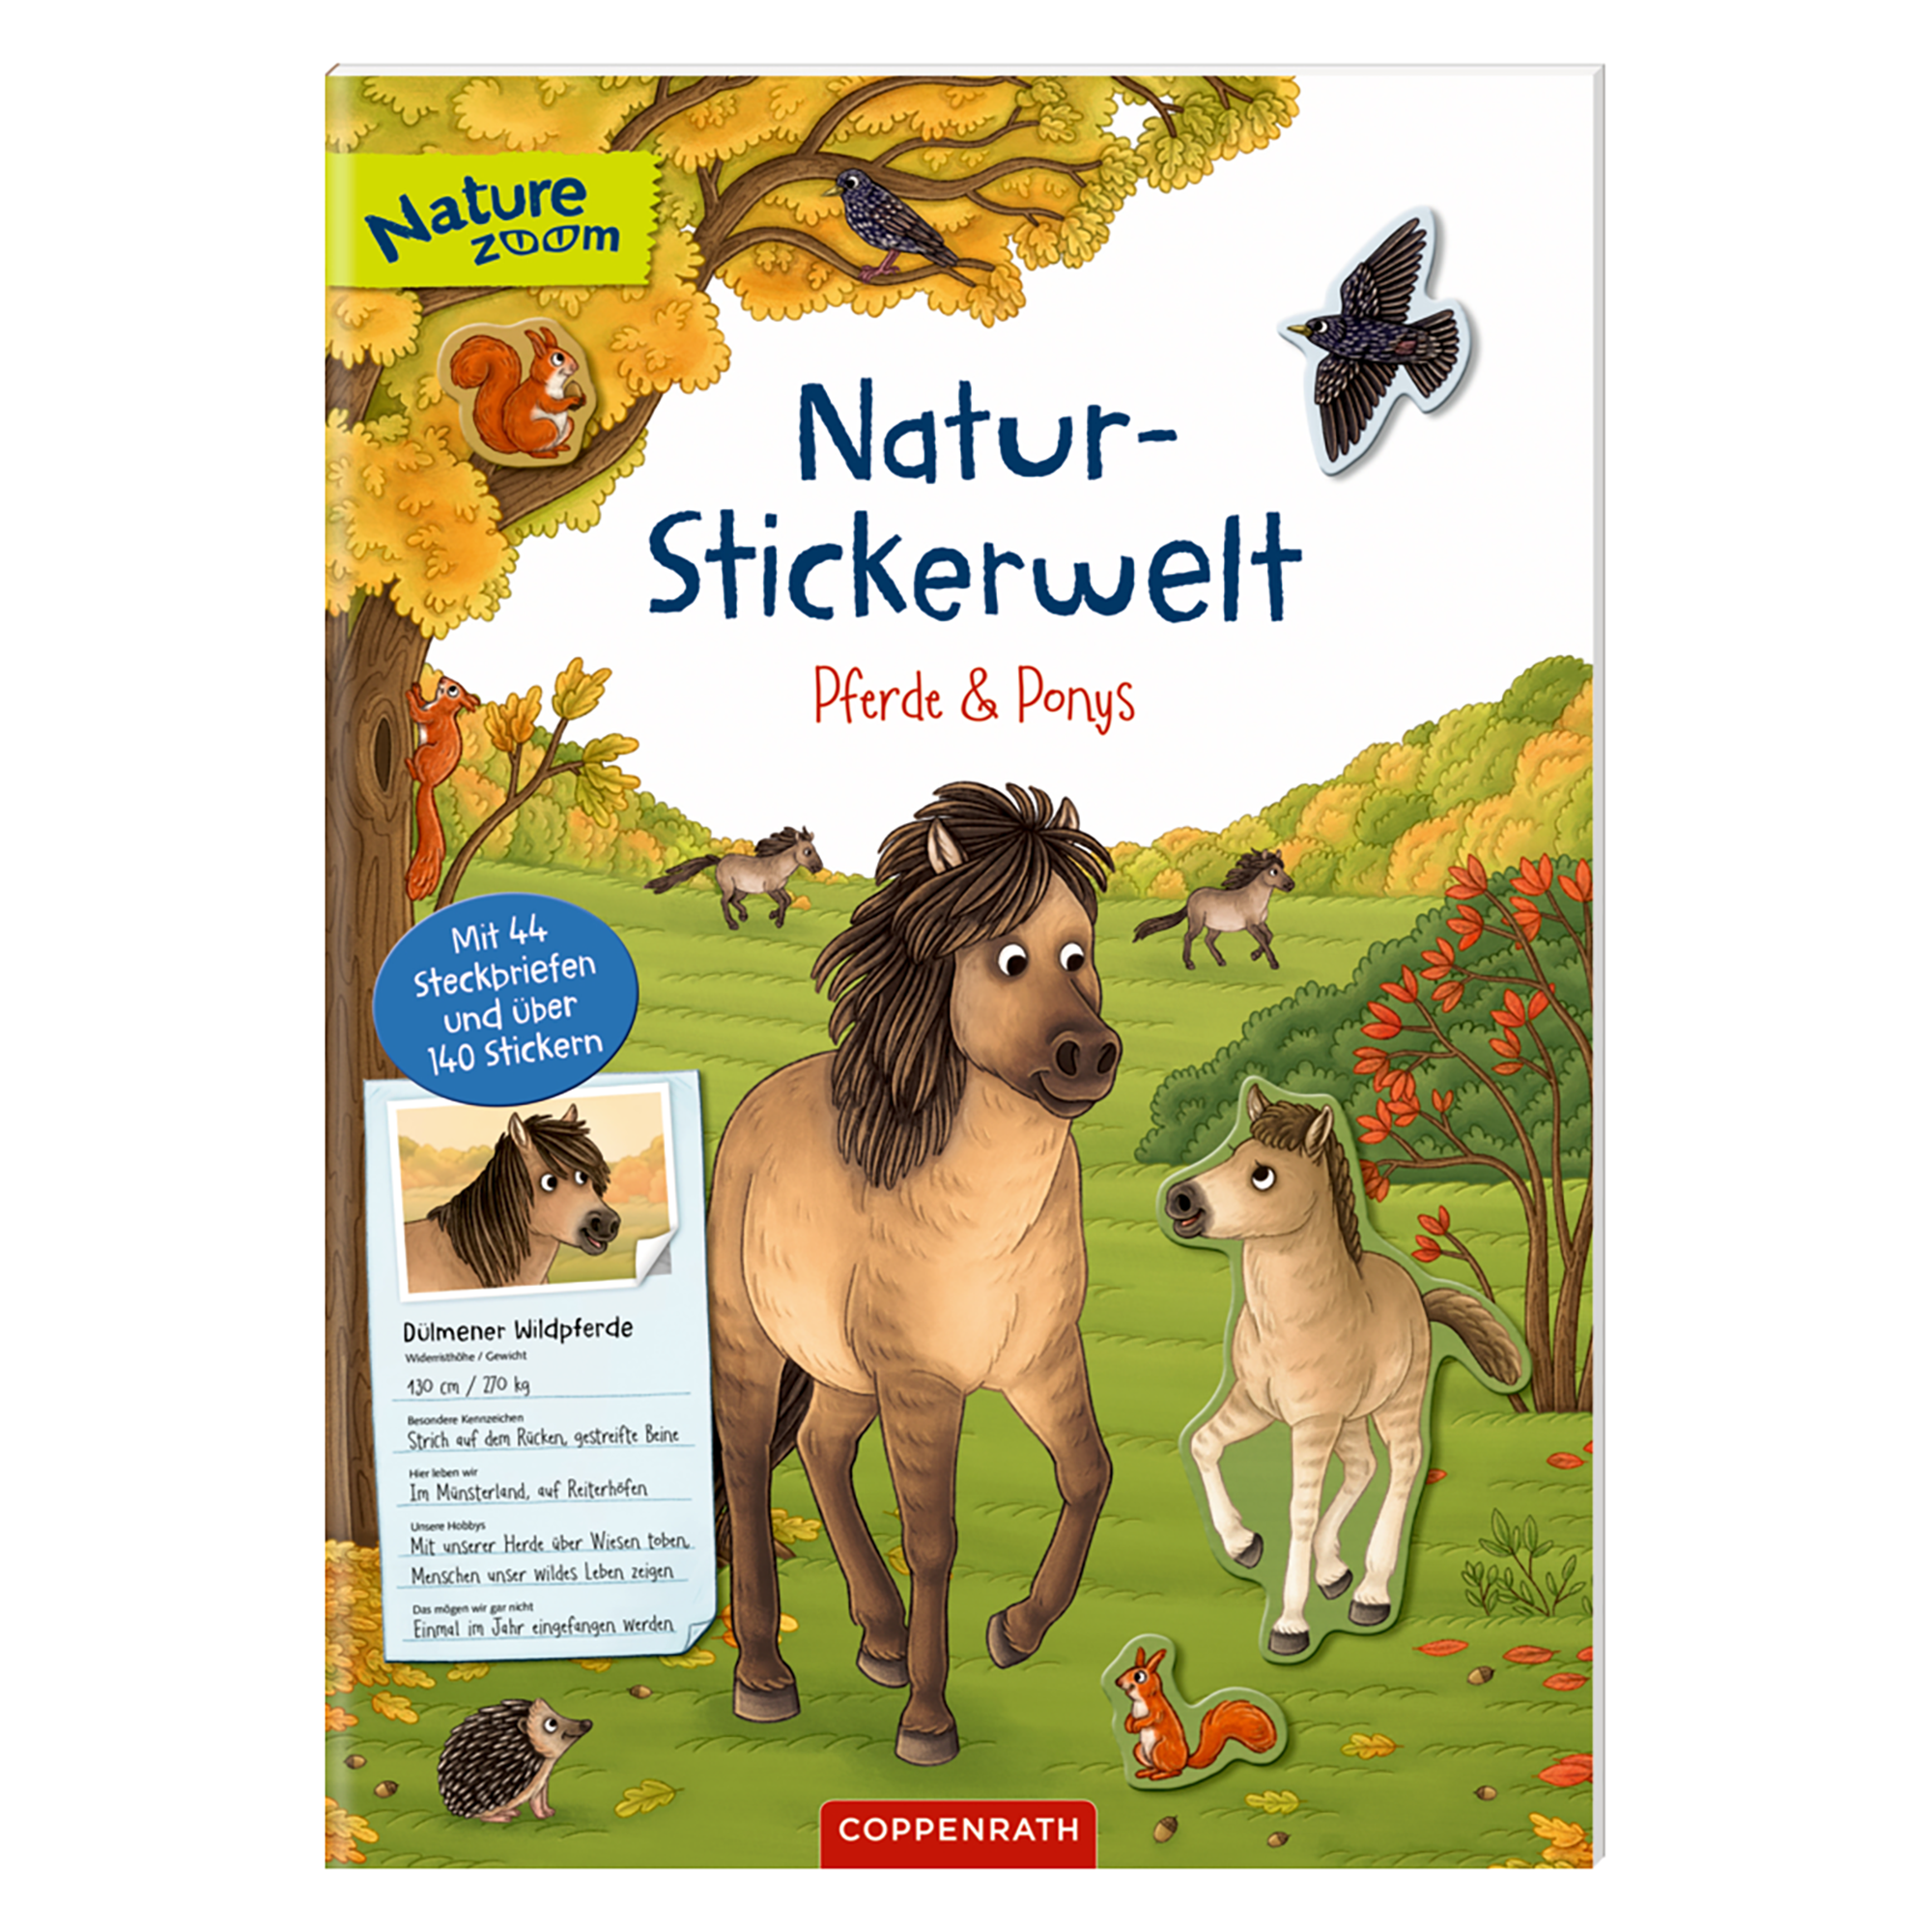 Natur-Stickerwelt Pferde und Ponys COPPENRATH 2000584614301 1